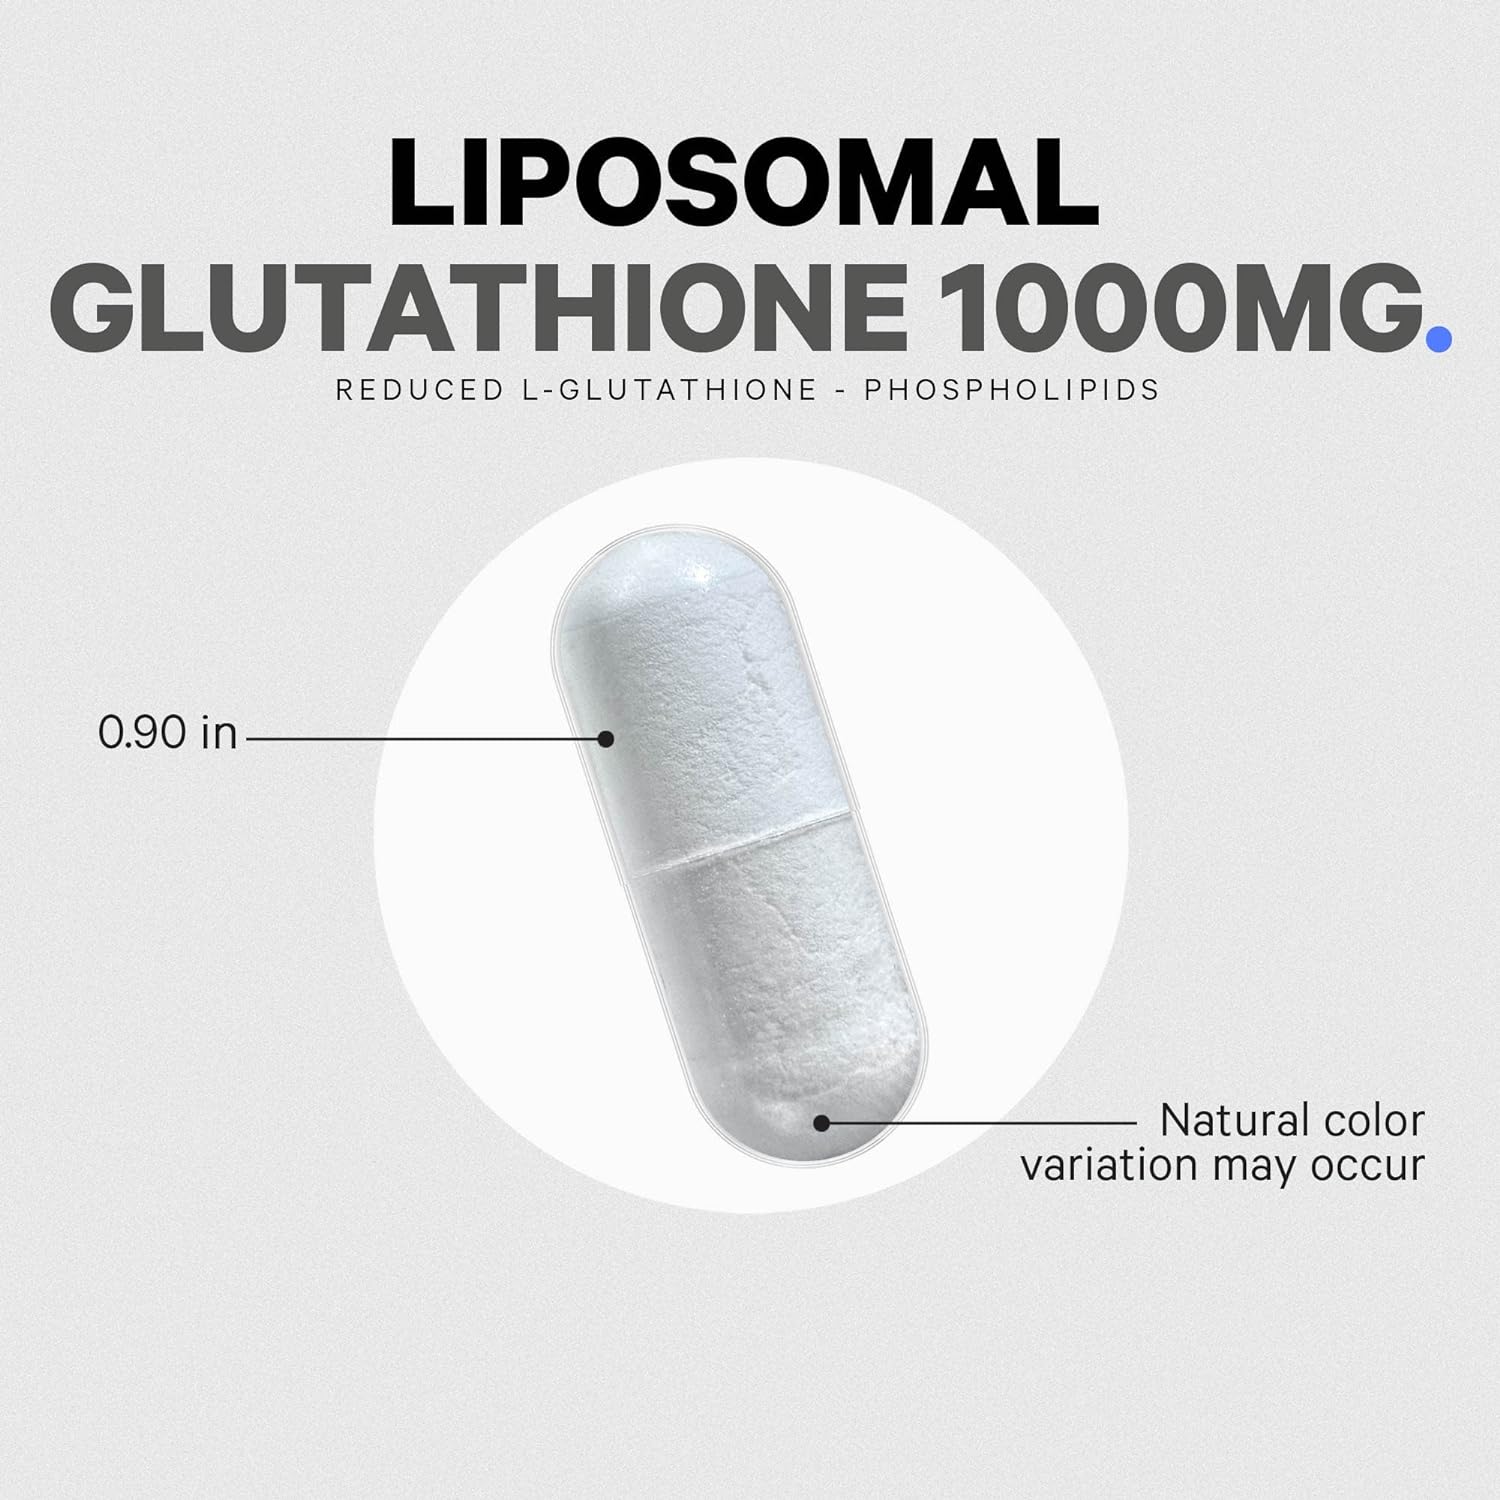 Codeage Liposomal Glutathione 1000 mg, GlutaONE Antioxidant 